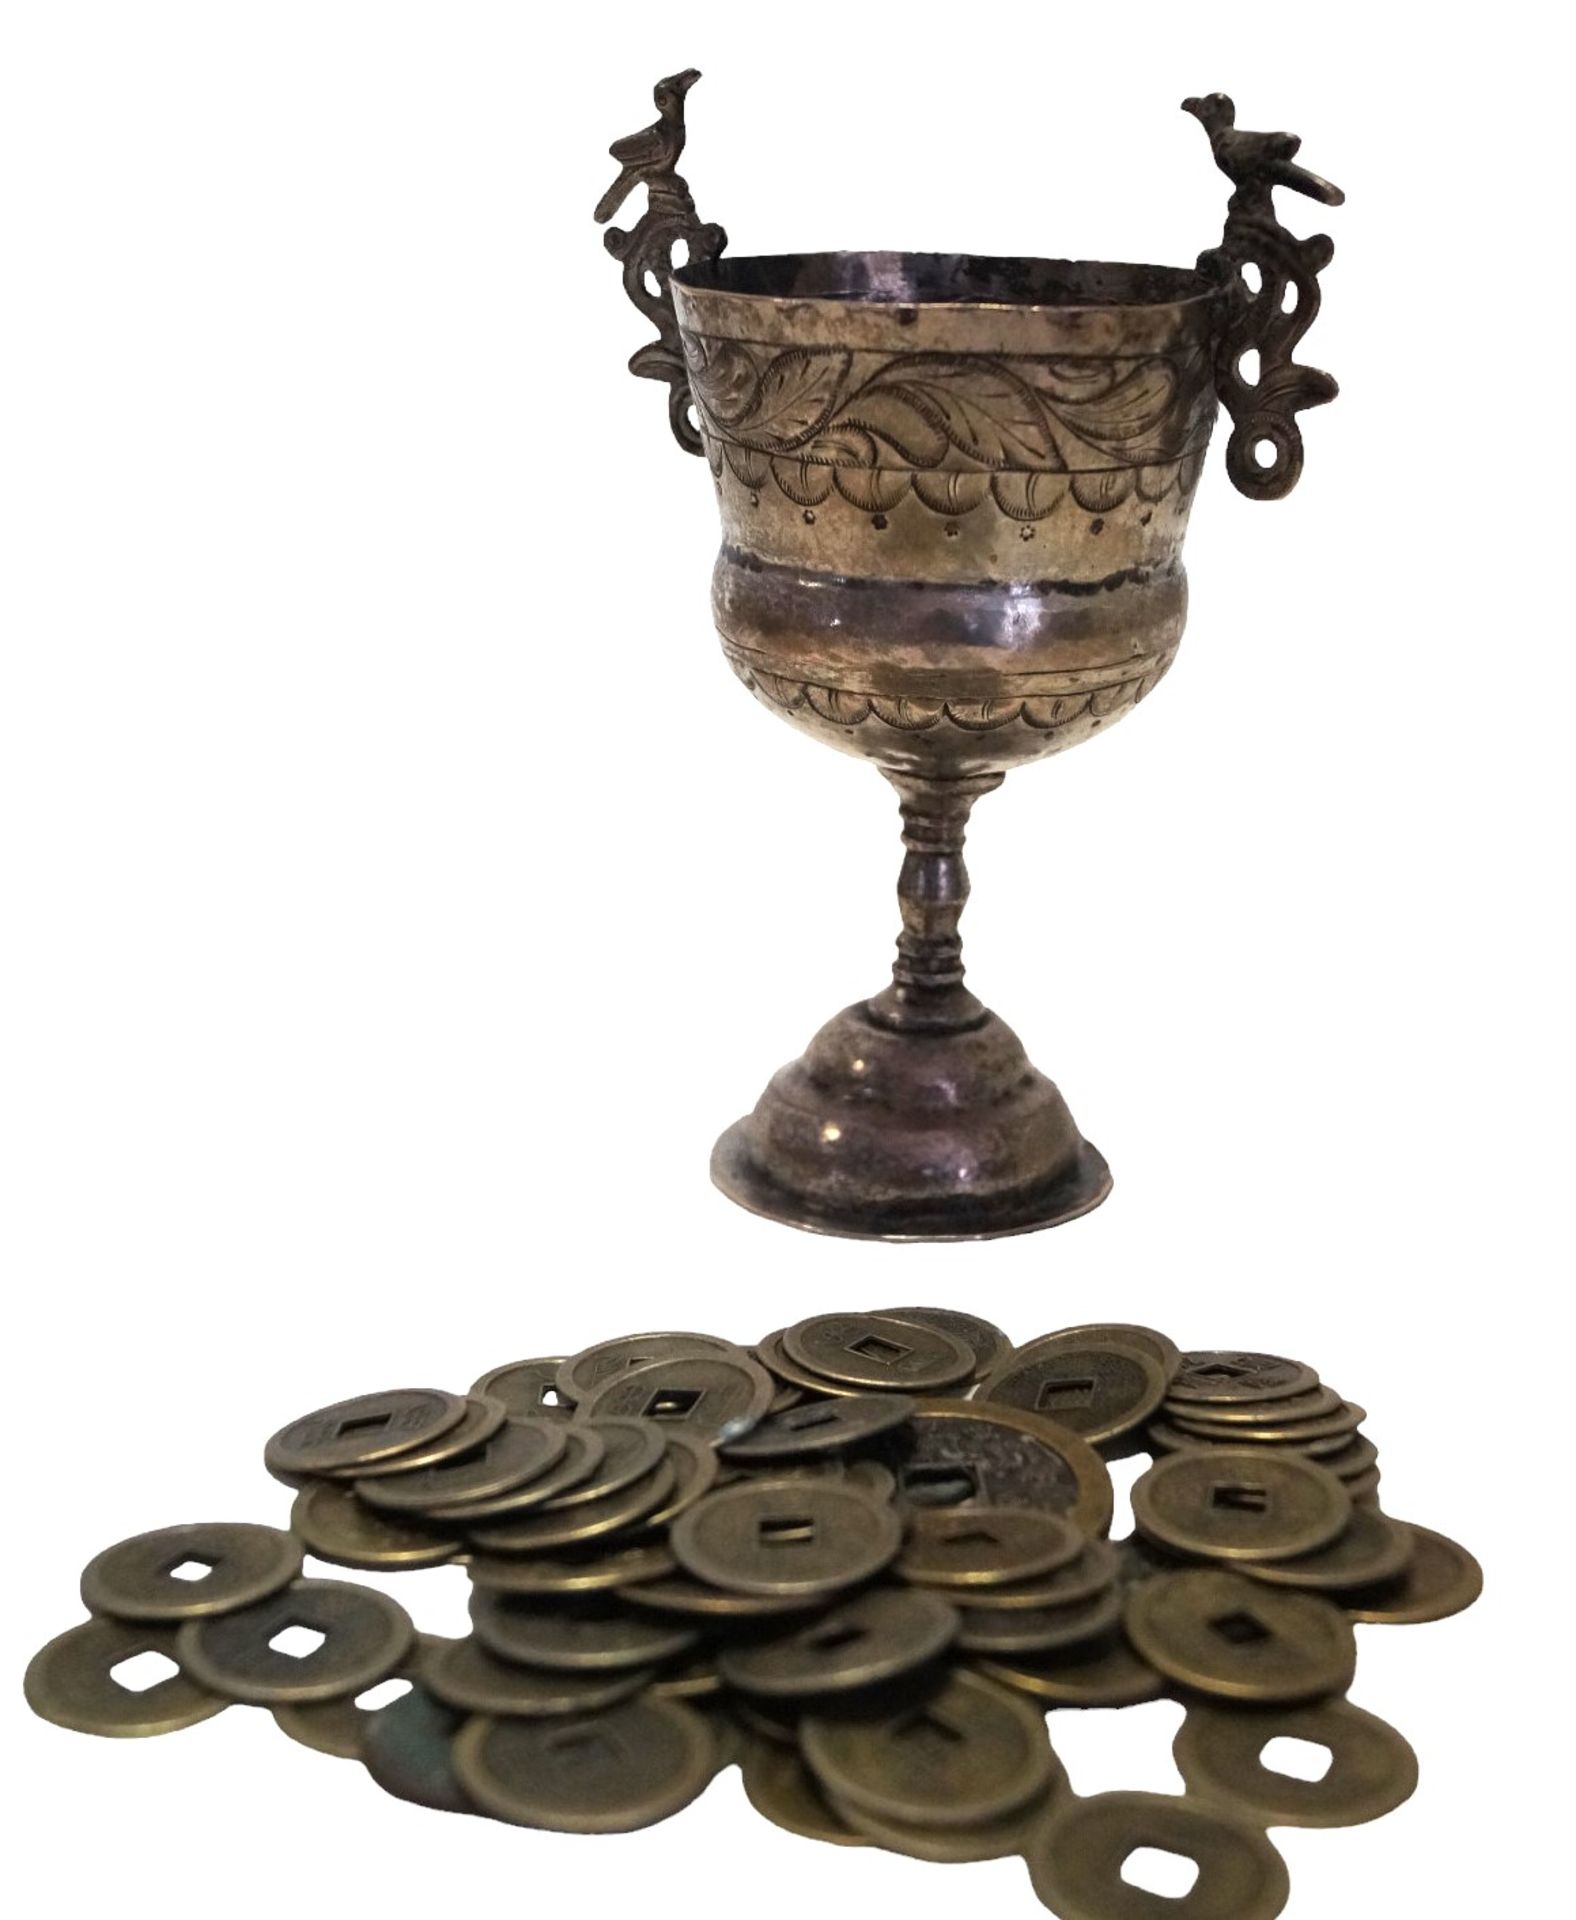 Wohl alter, kleiner Pokal mit seitlichen Handhaben; gefüllt mit ca. 65 chinesischen Messingmünzen; 